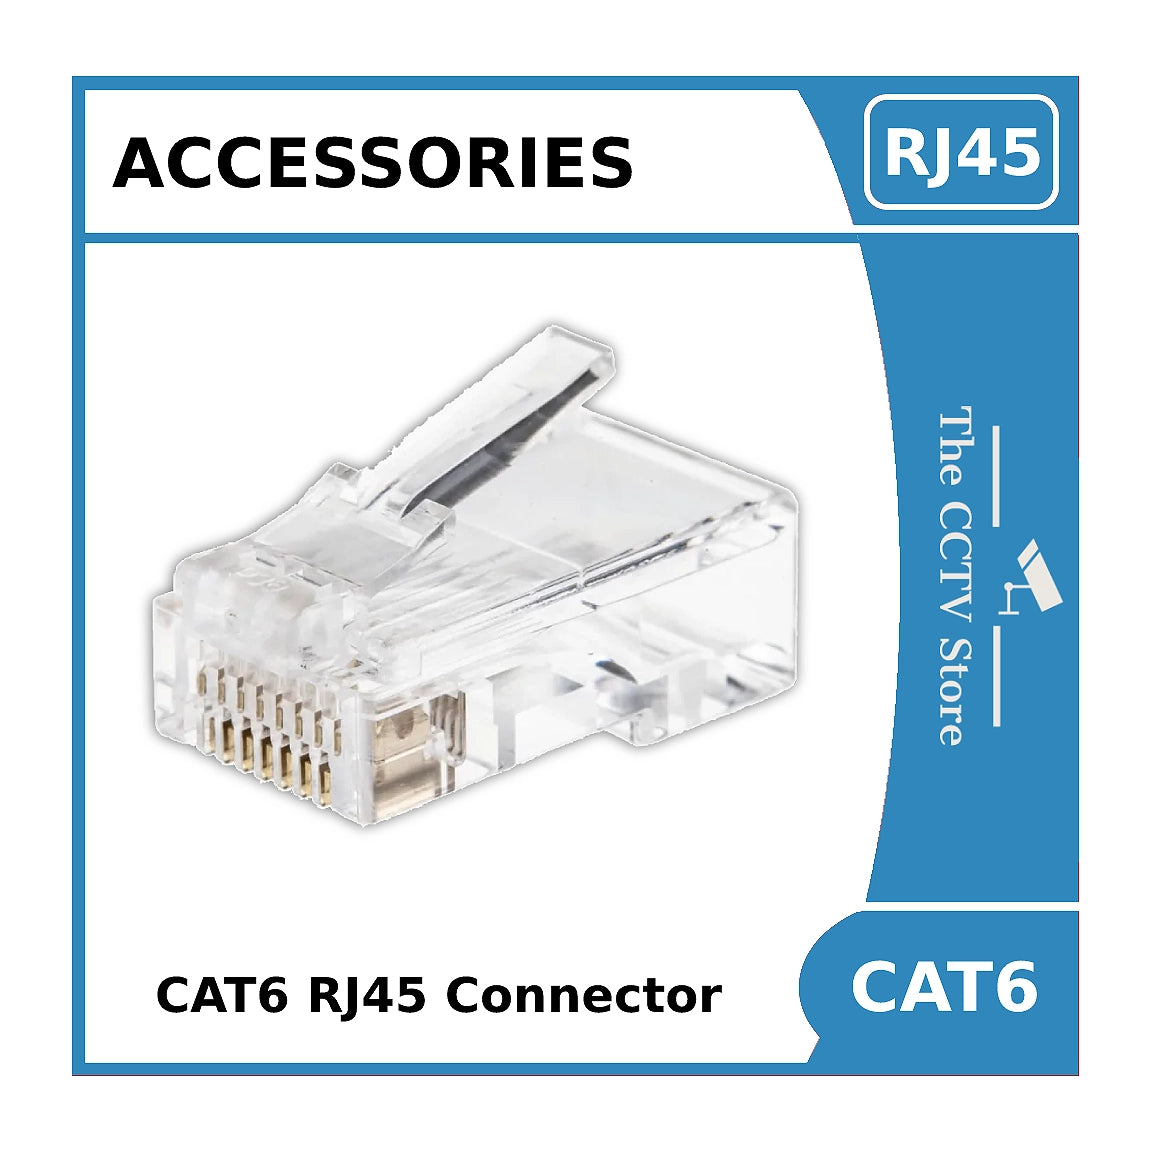 CAT6 Plug - RJ45 Plug Crimp Connector for CAT6 Ethernet Cable